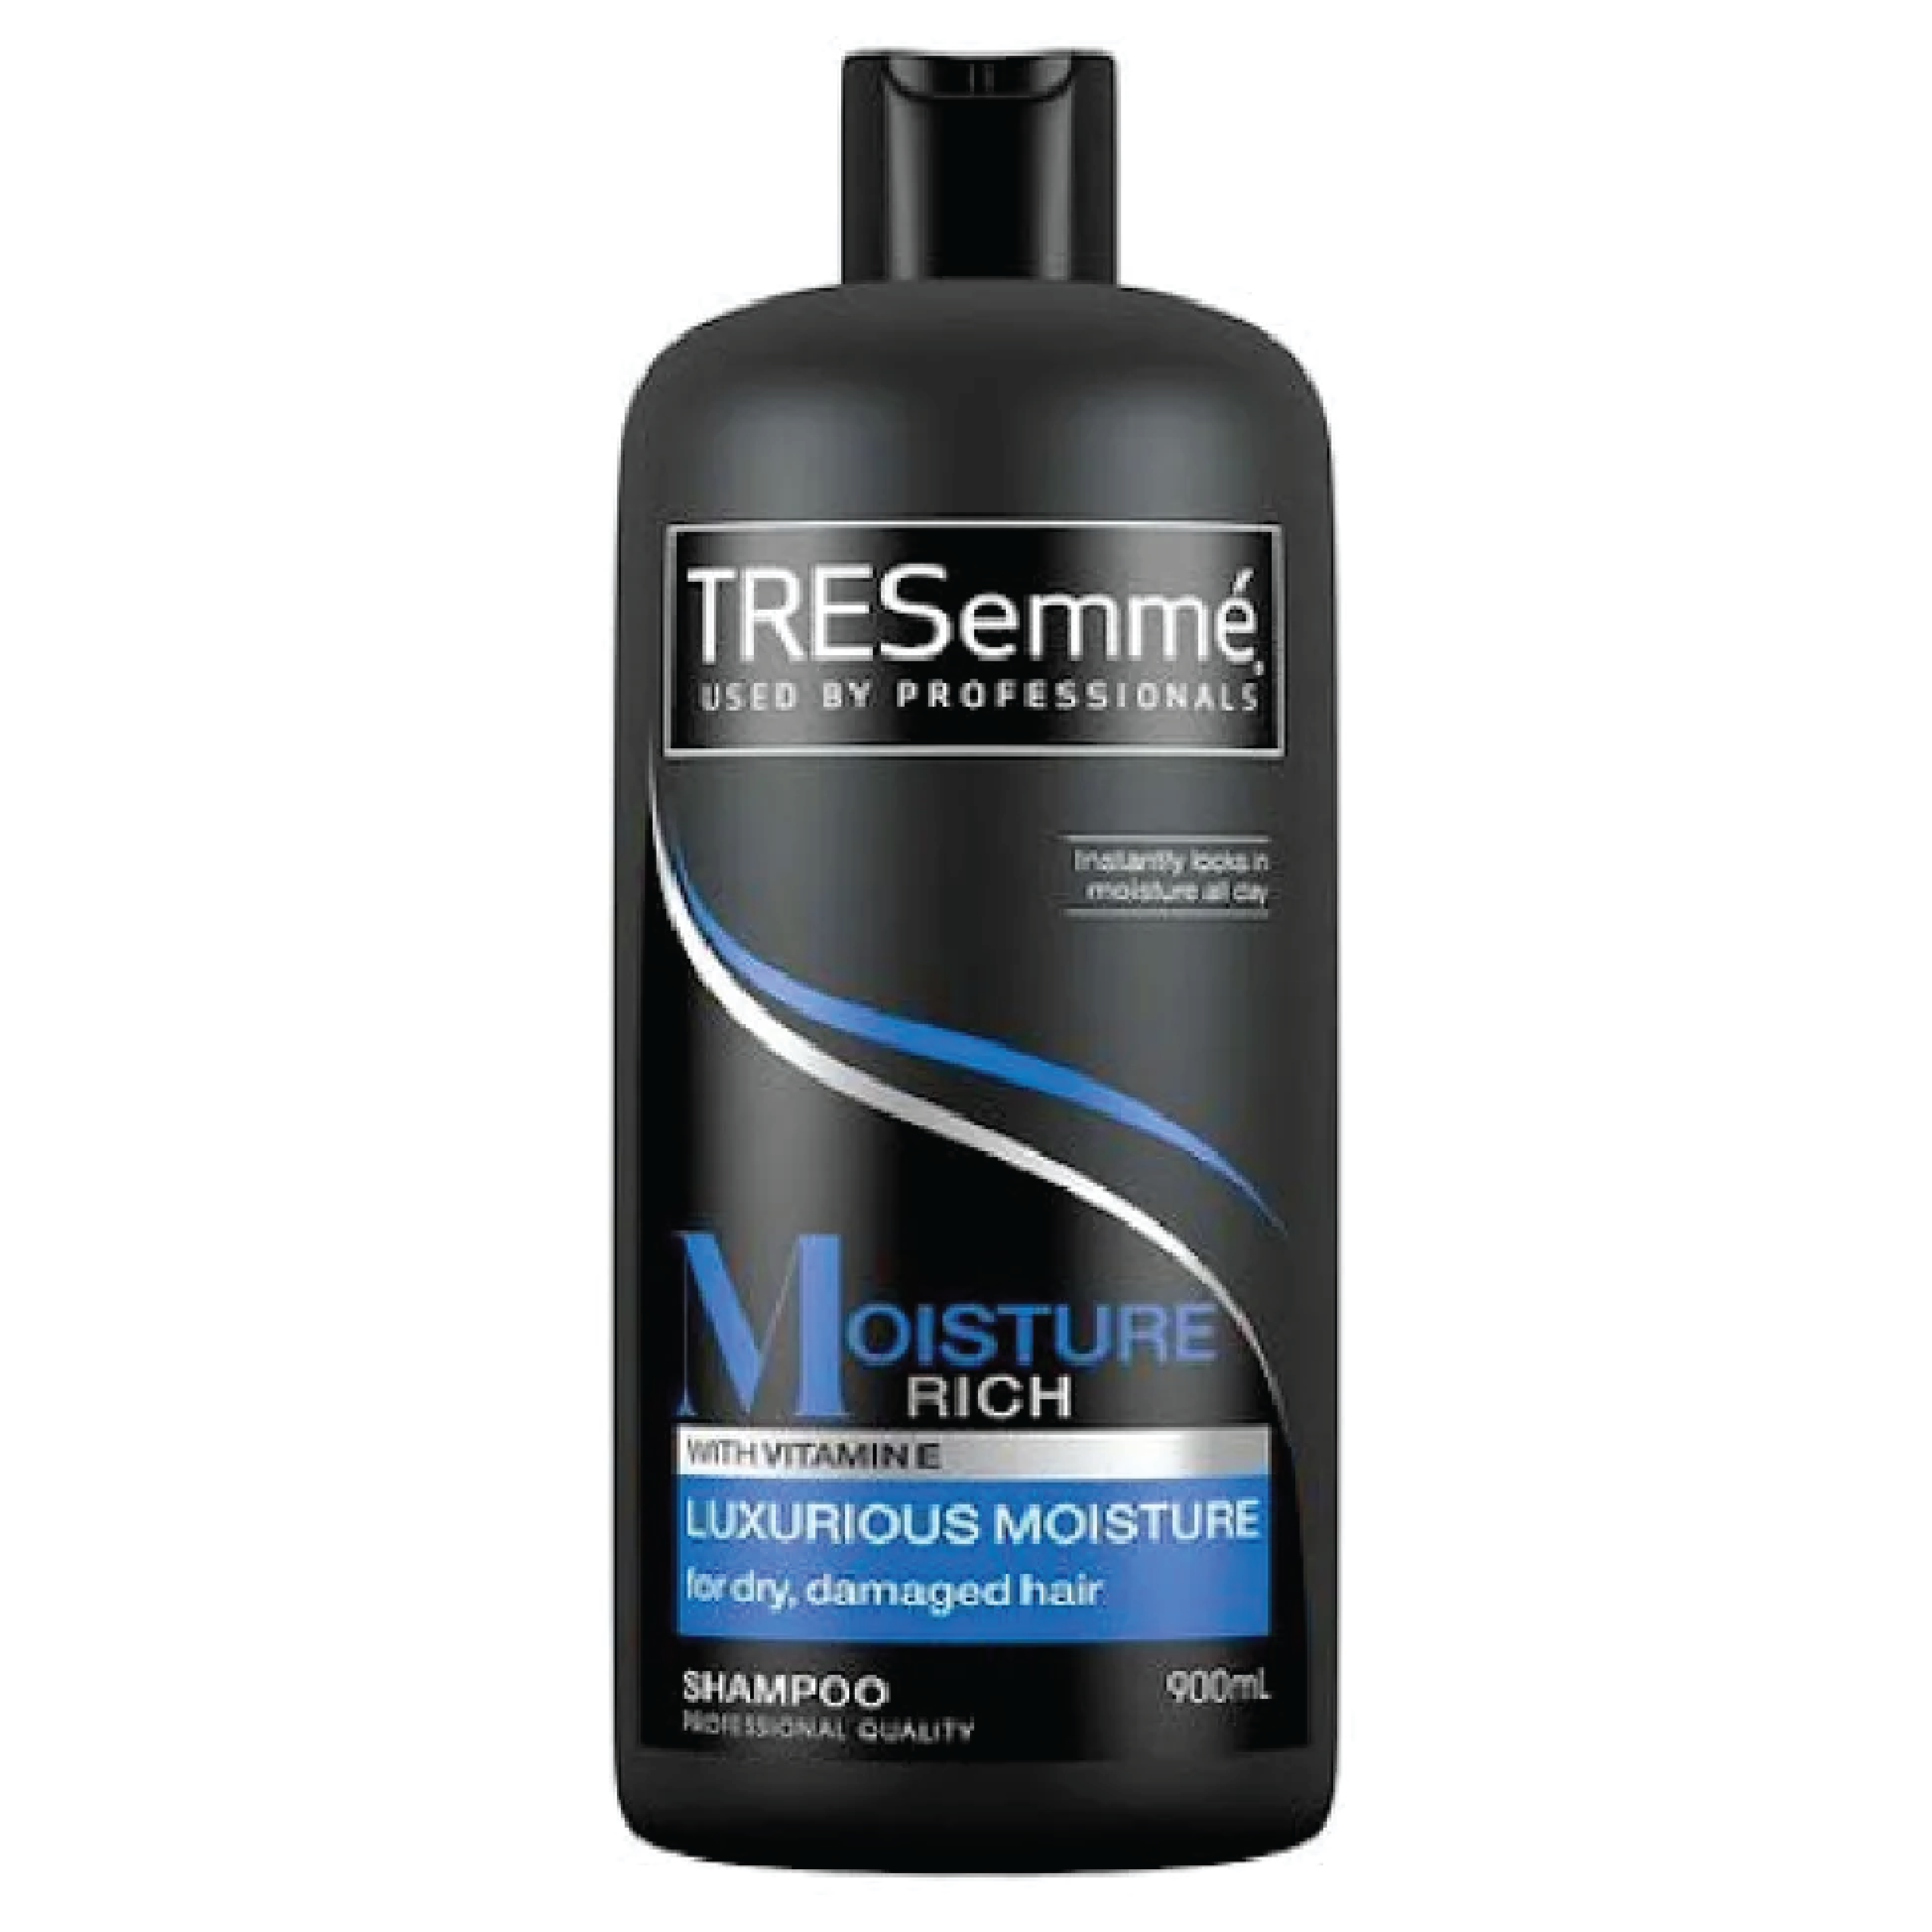 TreSemme' Moisture Rich W/Vitamin E Shampoo 900ml